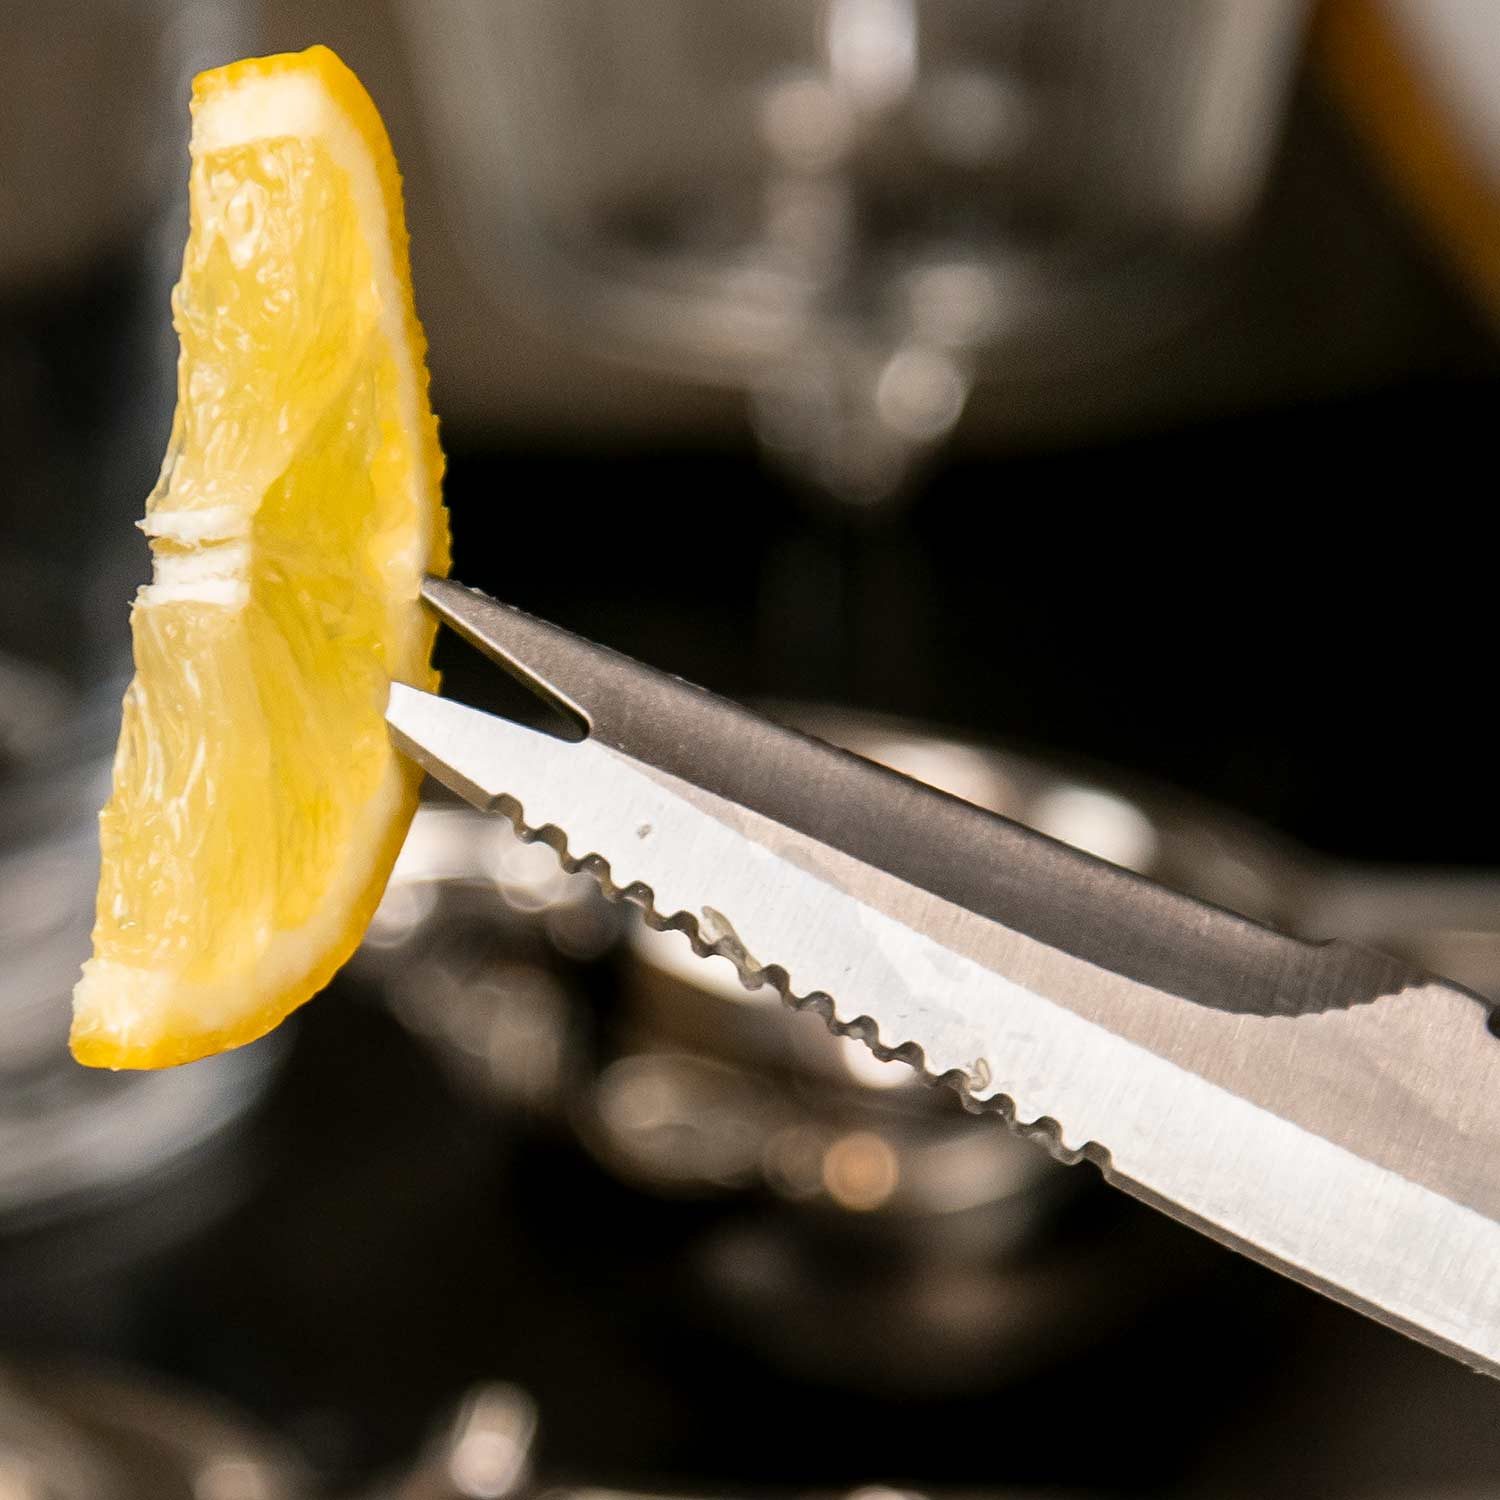 Zitronenscheibe mit Barmesser aufnehmen